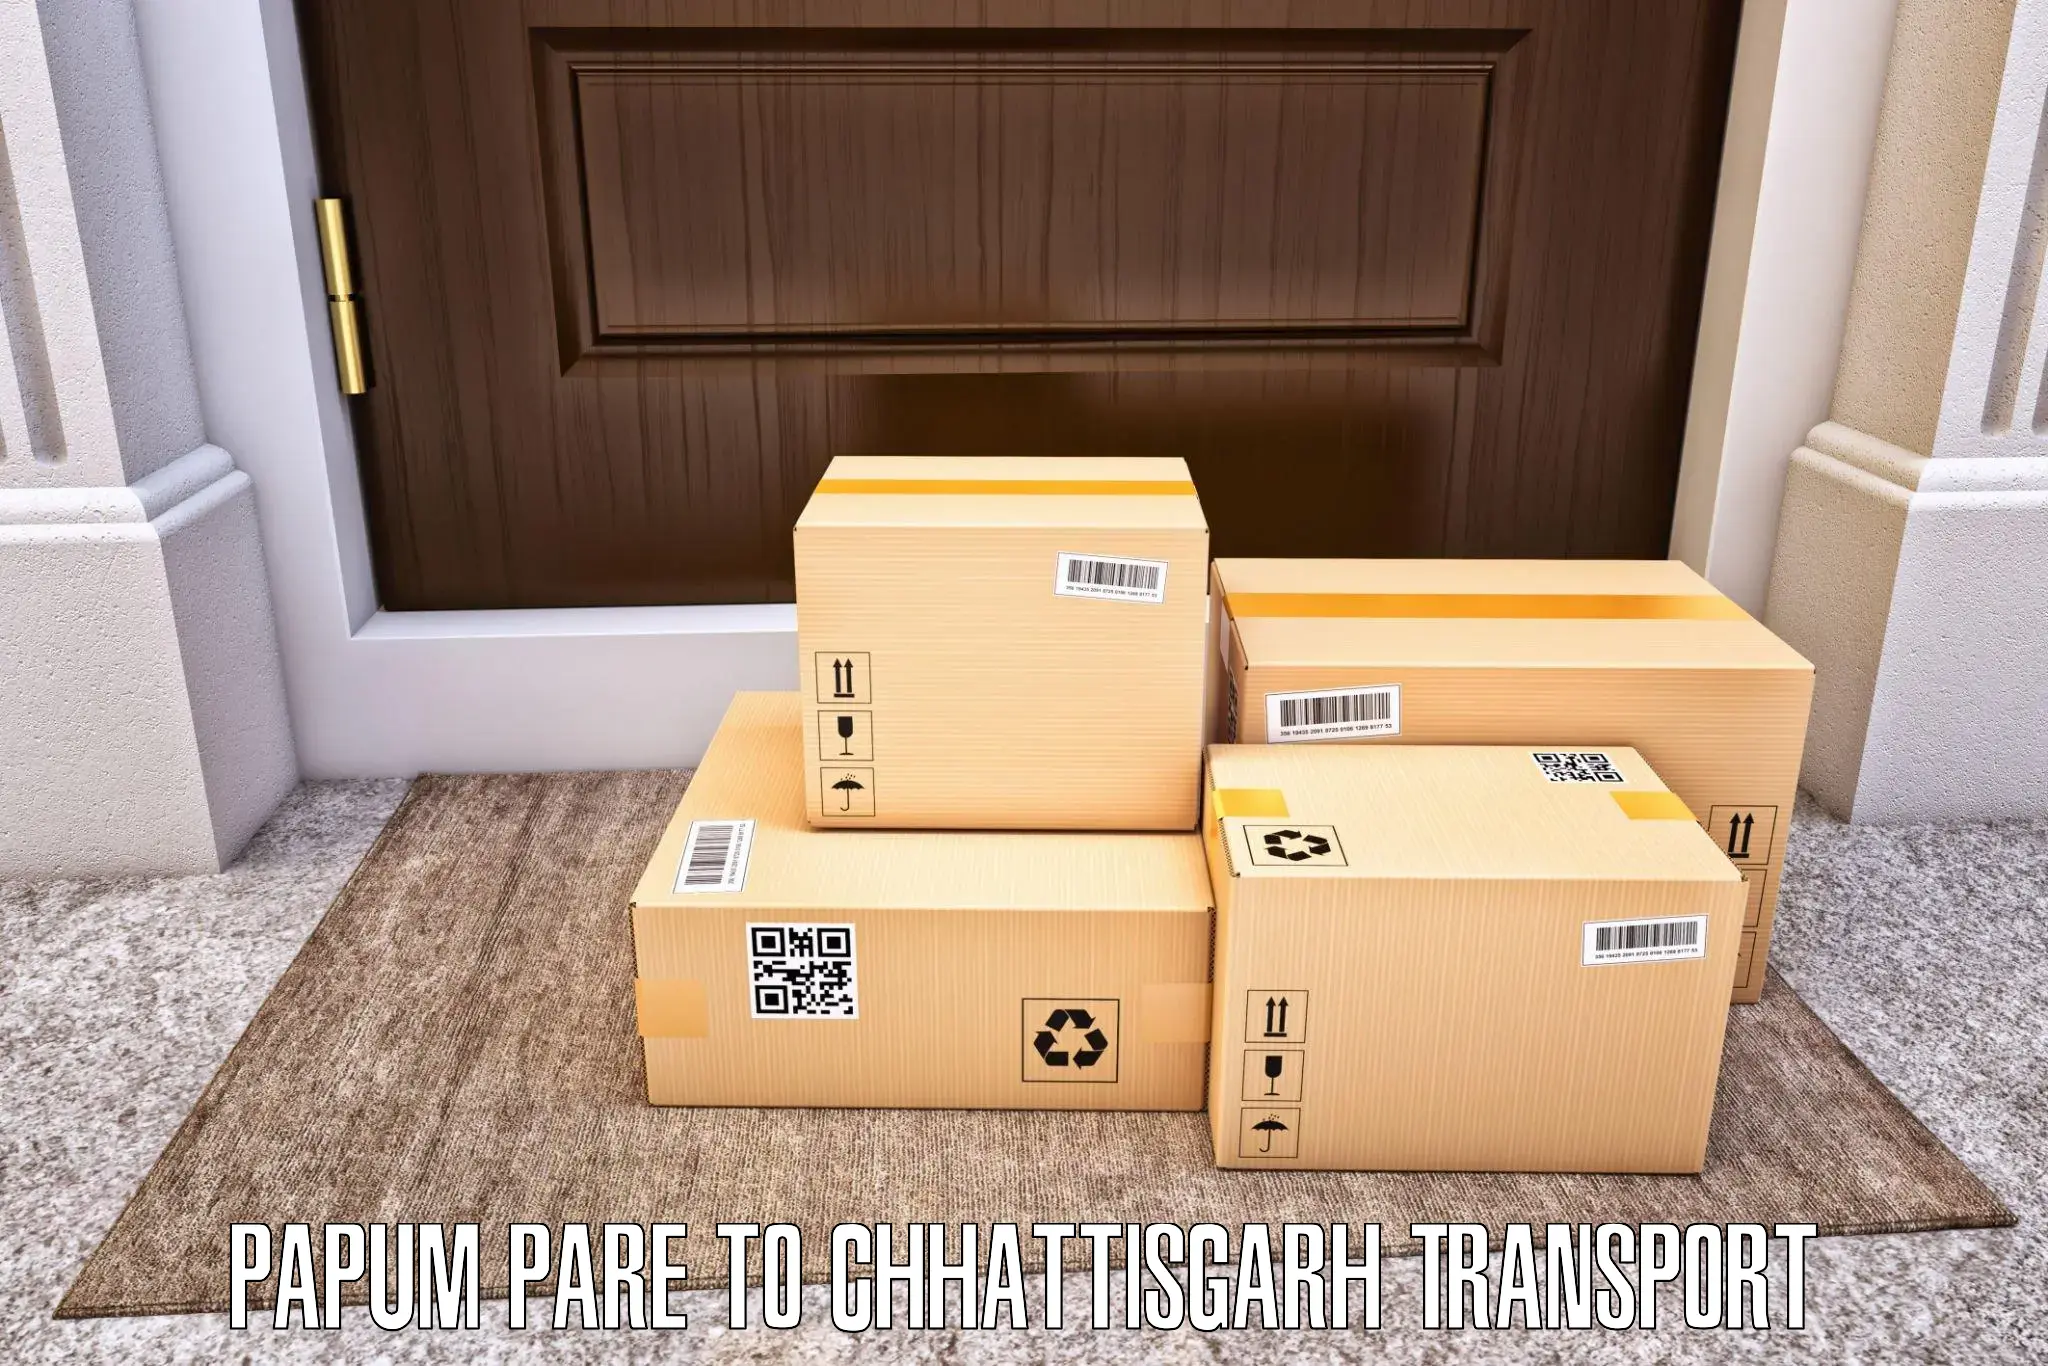 Container transport service Papum Pare to Korea Chhattisgarh